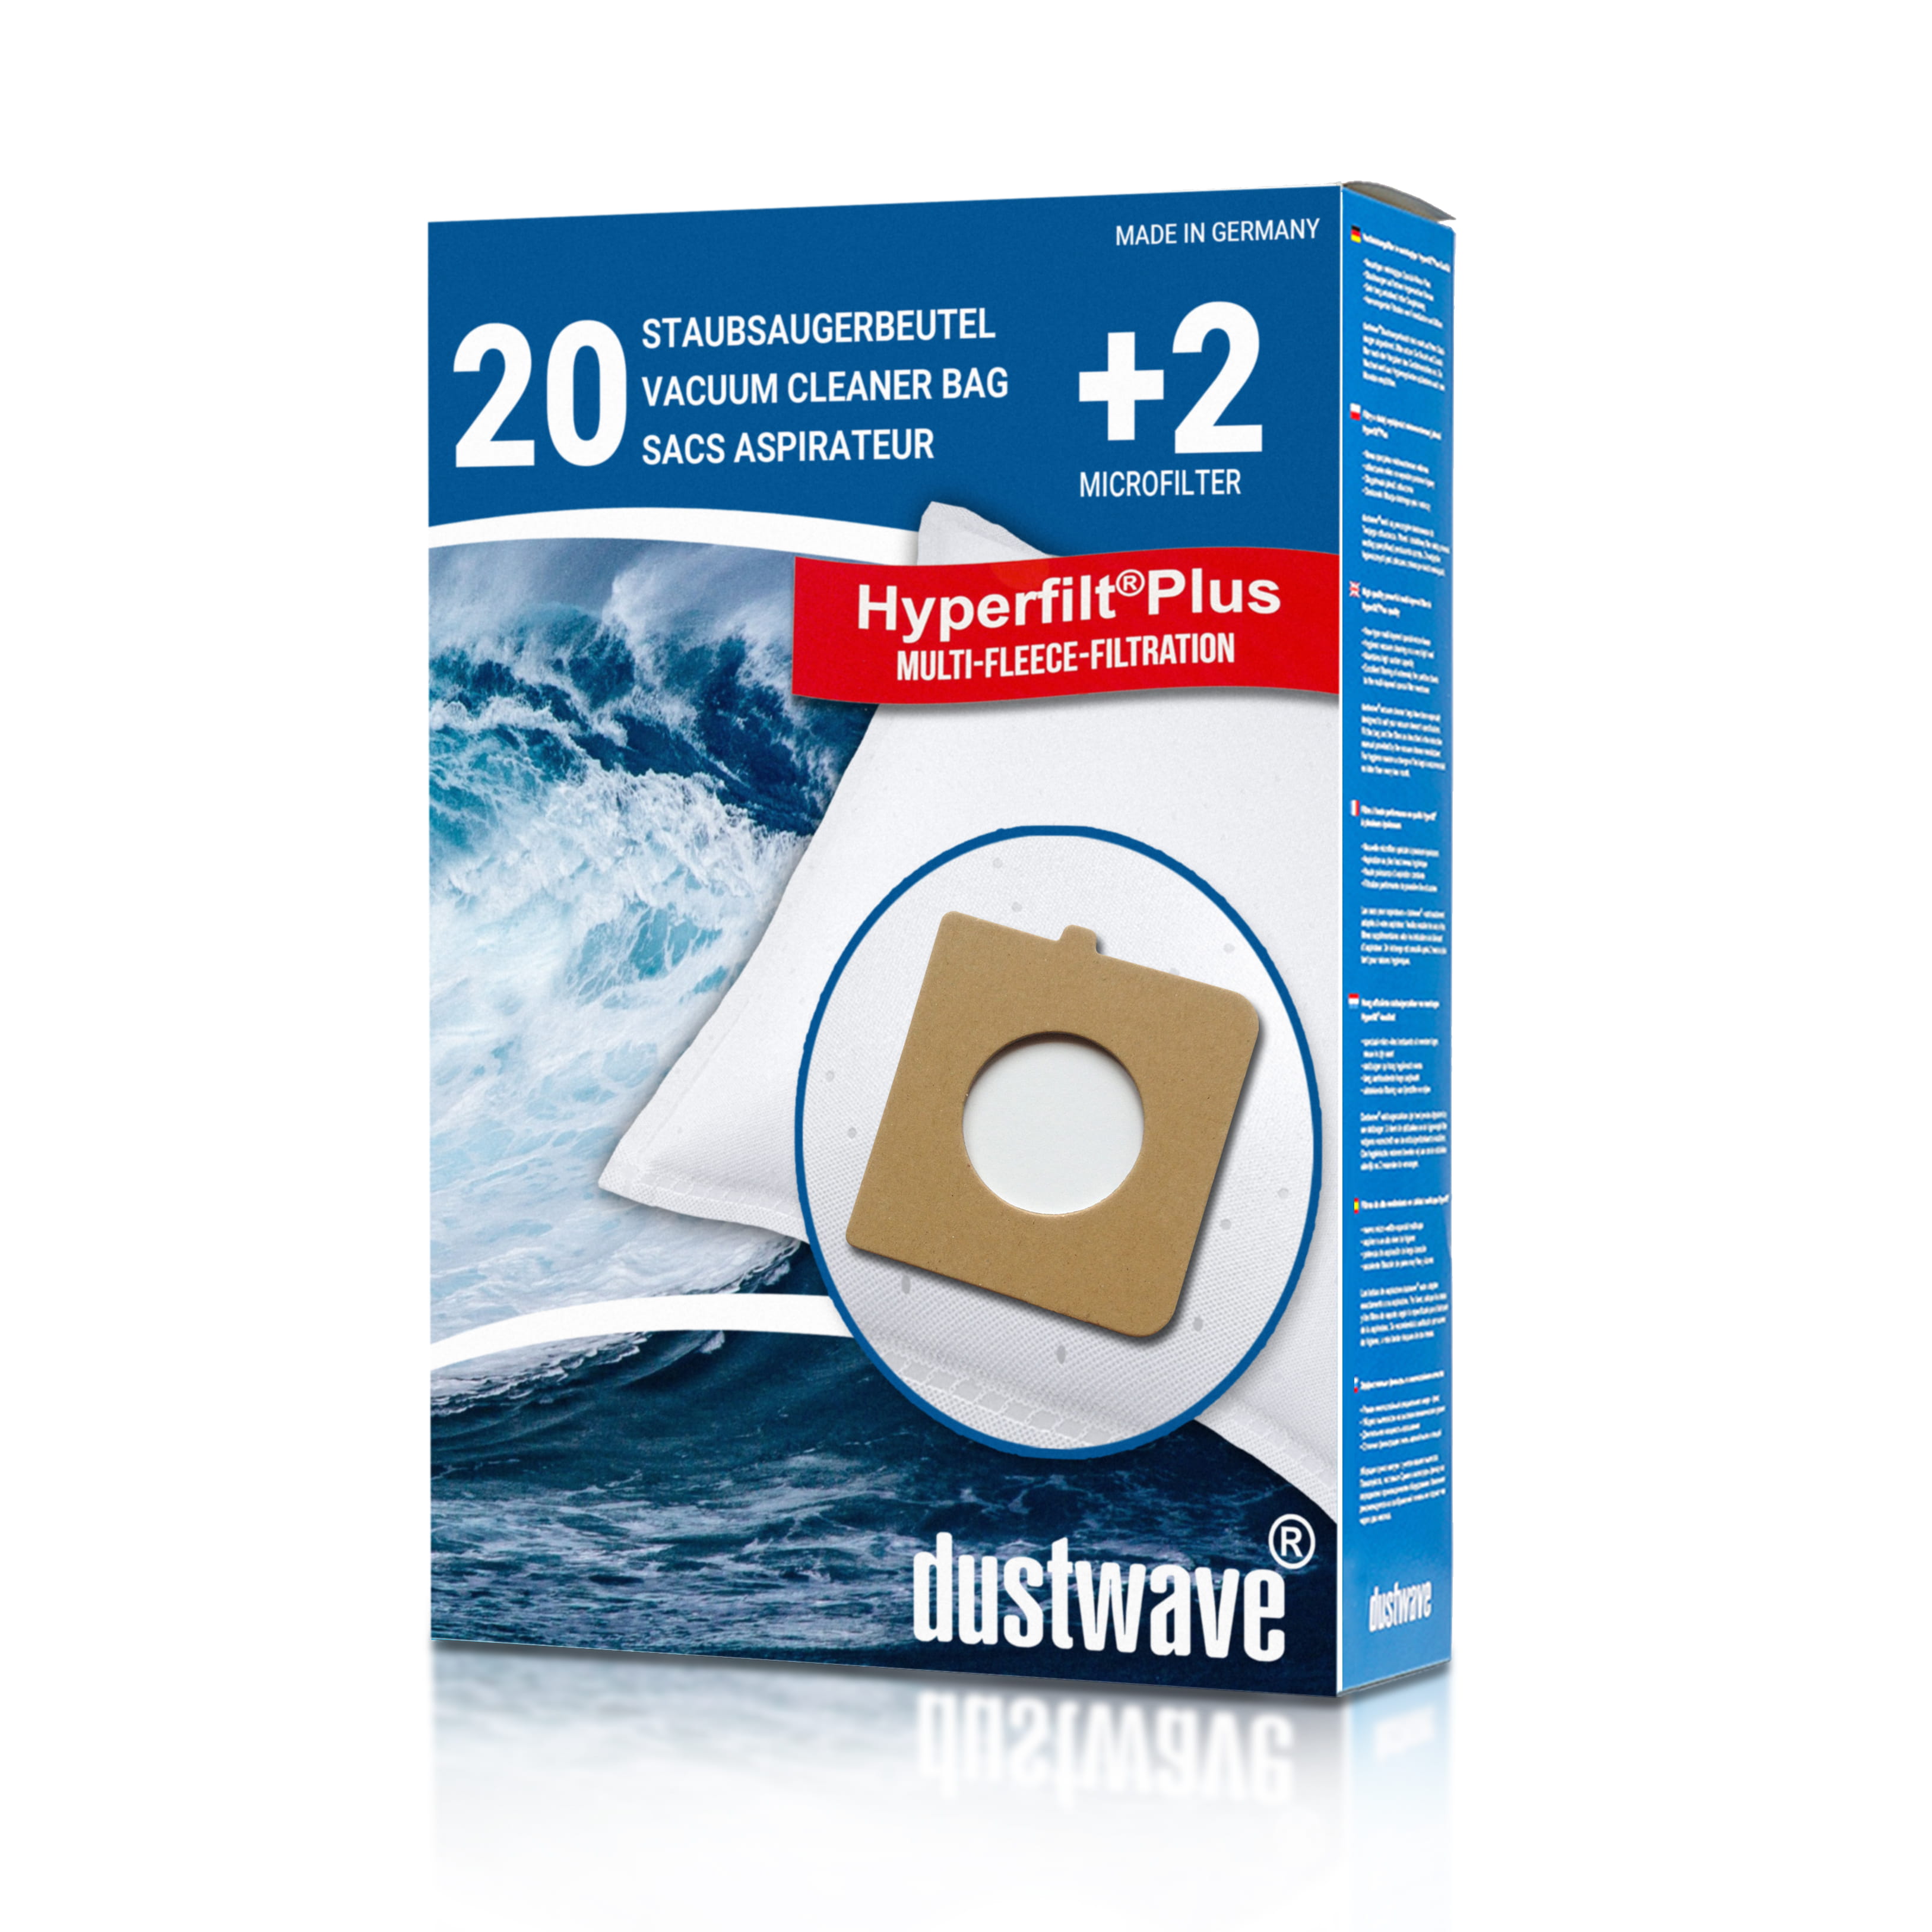 Dustwave® 20 Staubsaugerbeutel für Hoover TX40PET 011 Telios Extra - hocheffizient, mehrlagiges Mikrovlies mit Hygieneverschluss - Made in Germany